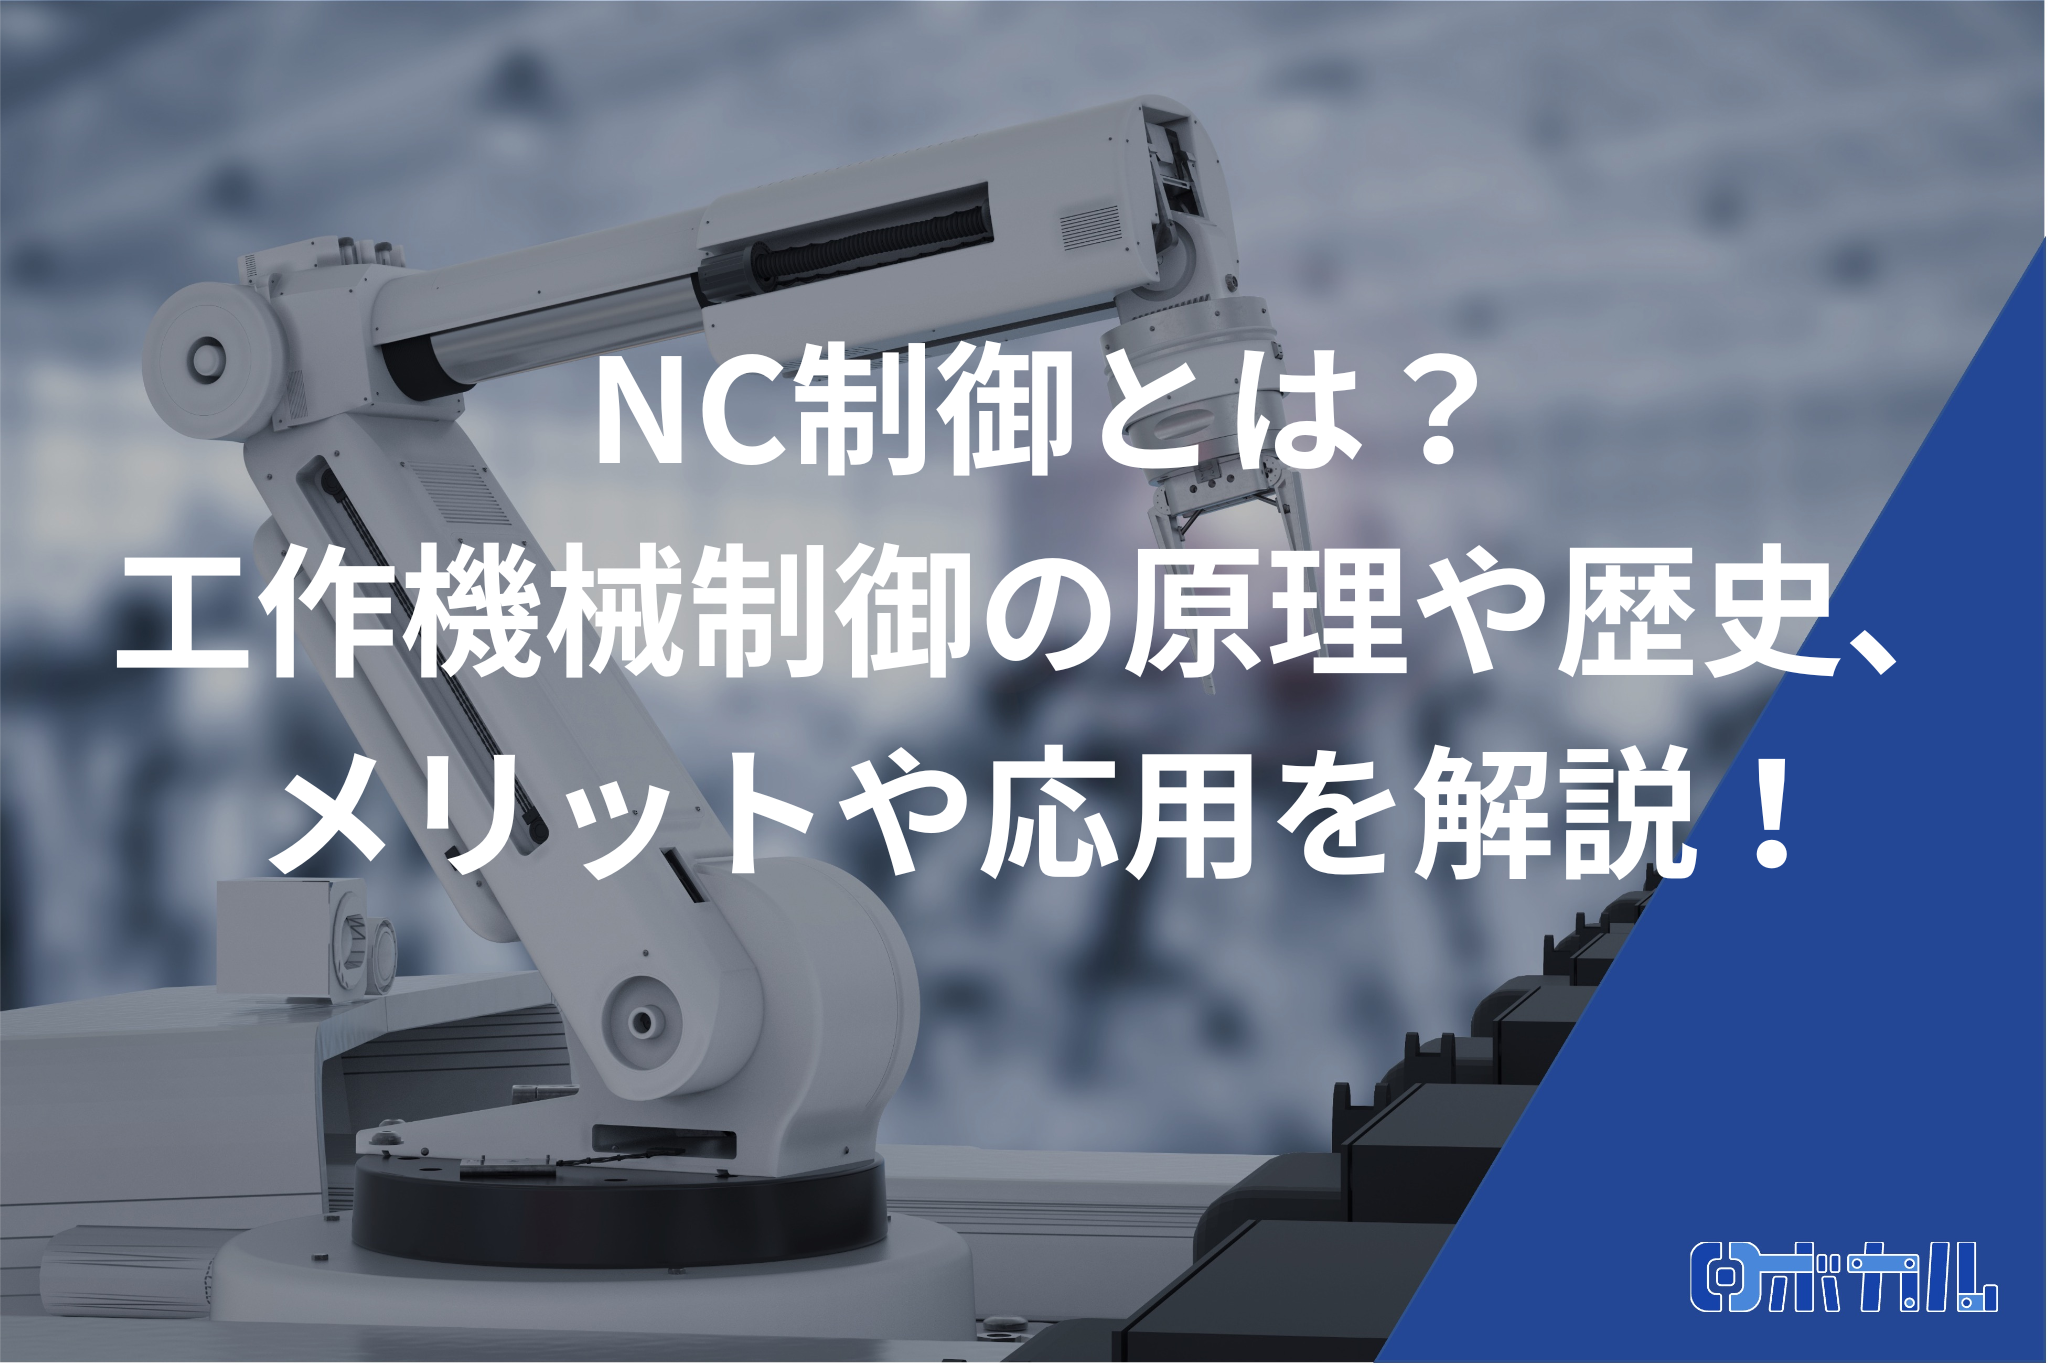 NC制御とは？工作機械制御の原理や歴史、メリットや応用を解説！